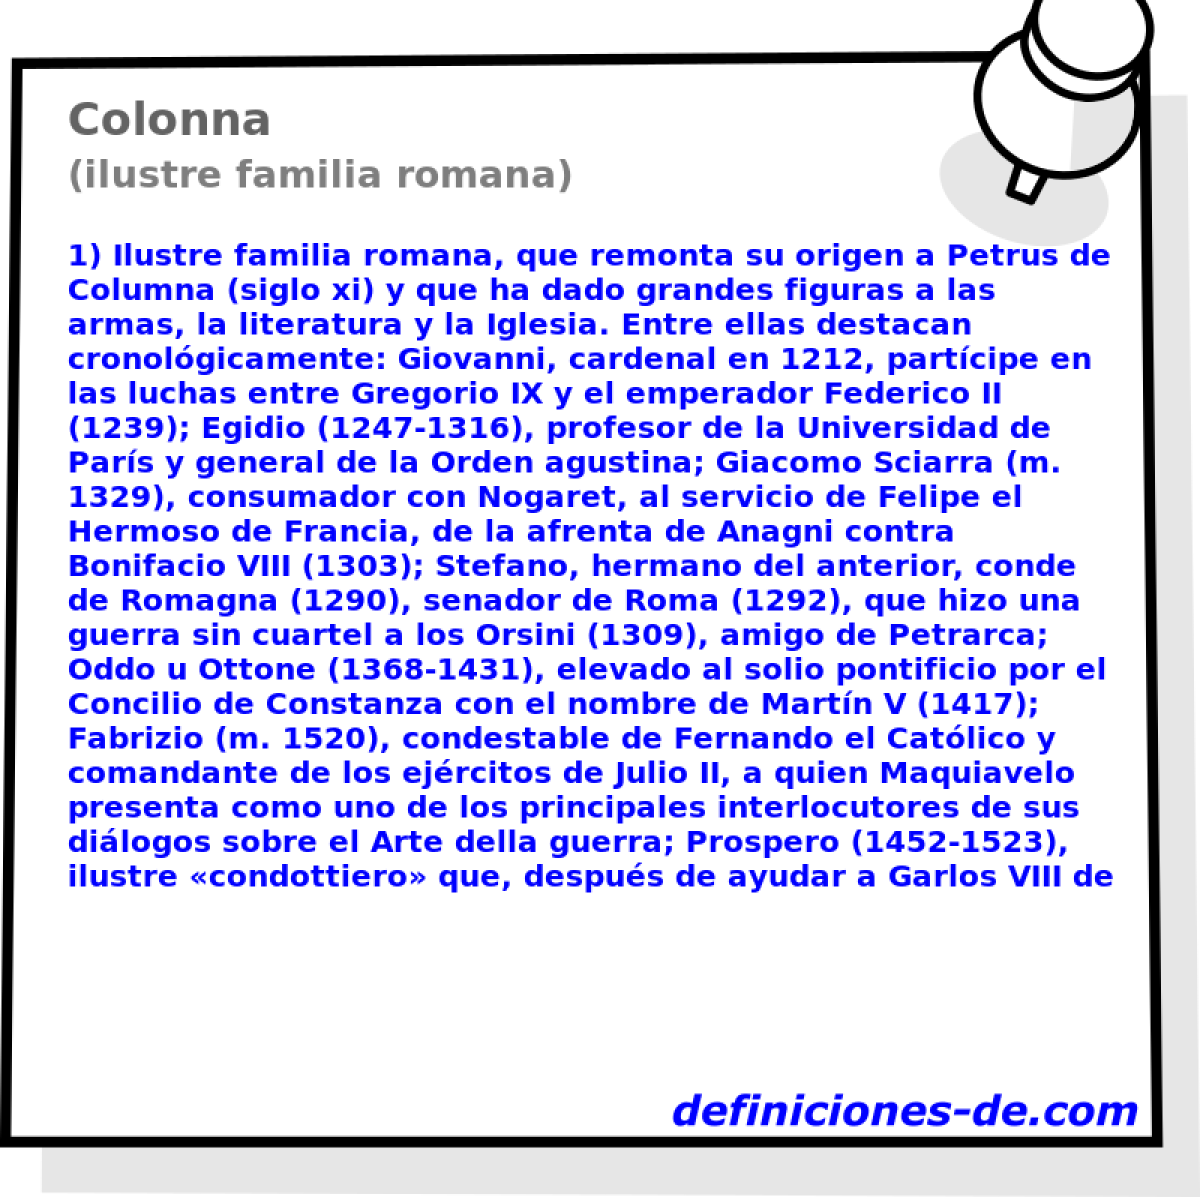 Colonna (ilustre familia romana)